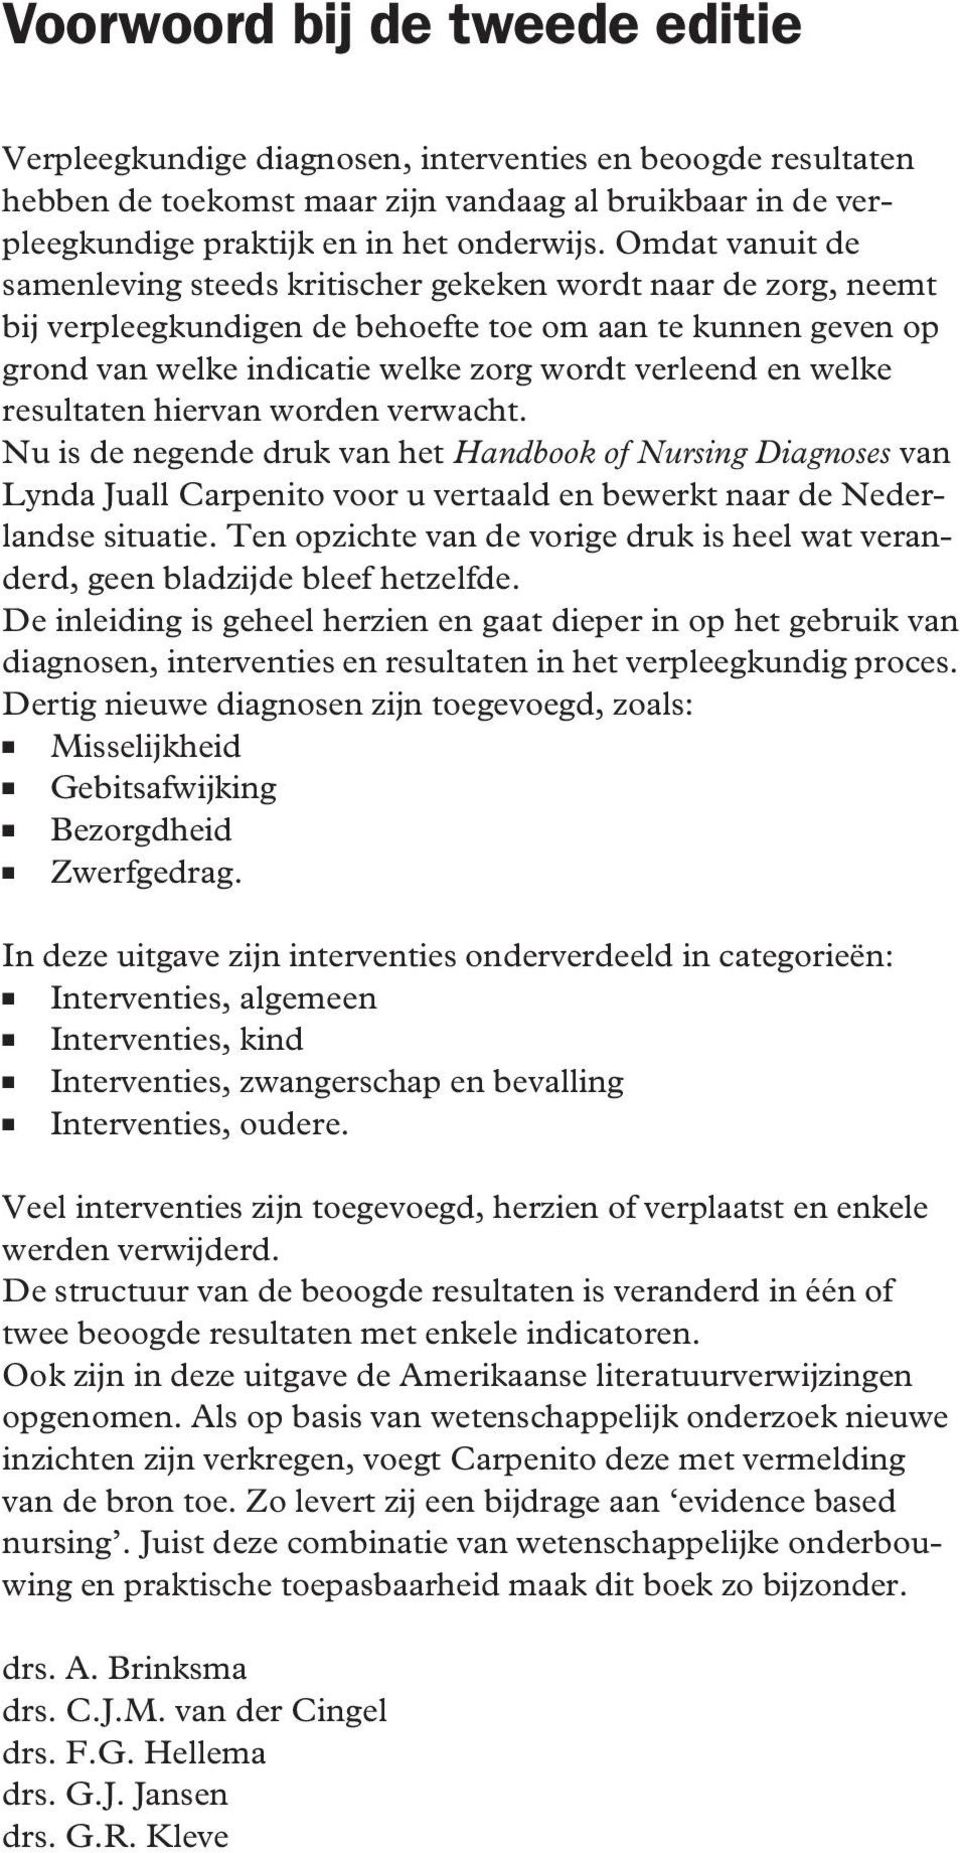 welke resultaten hiervan worden verwacht. Nu is de negende druk van het Handbook of Nursing Diagnoses van Lynda Juall Carpenito voor u vertaald en bewerkt naar de Nederlandse situatie.